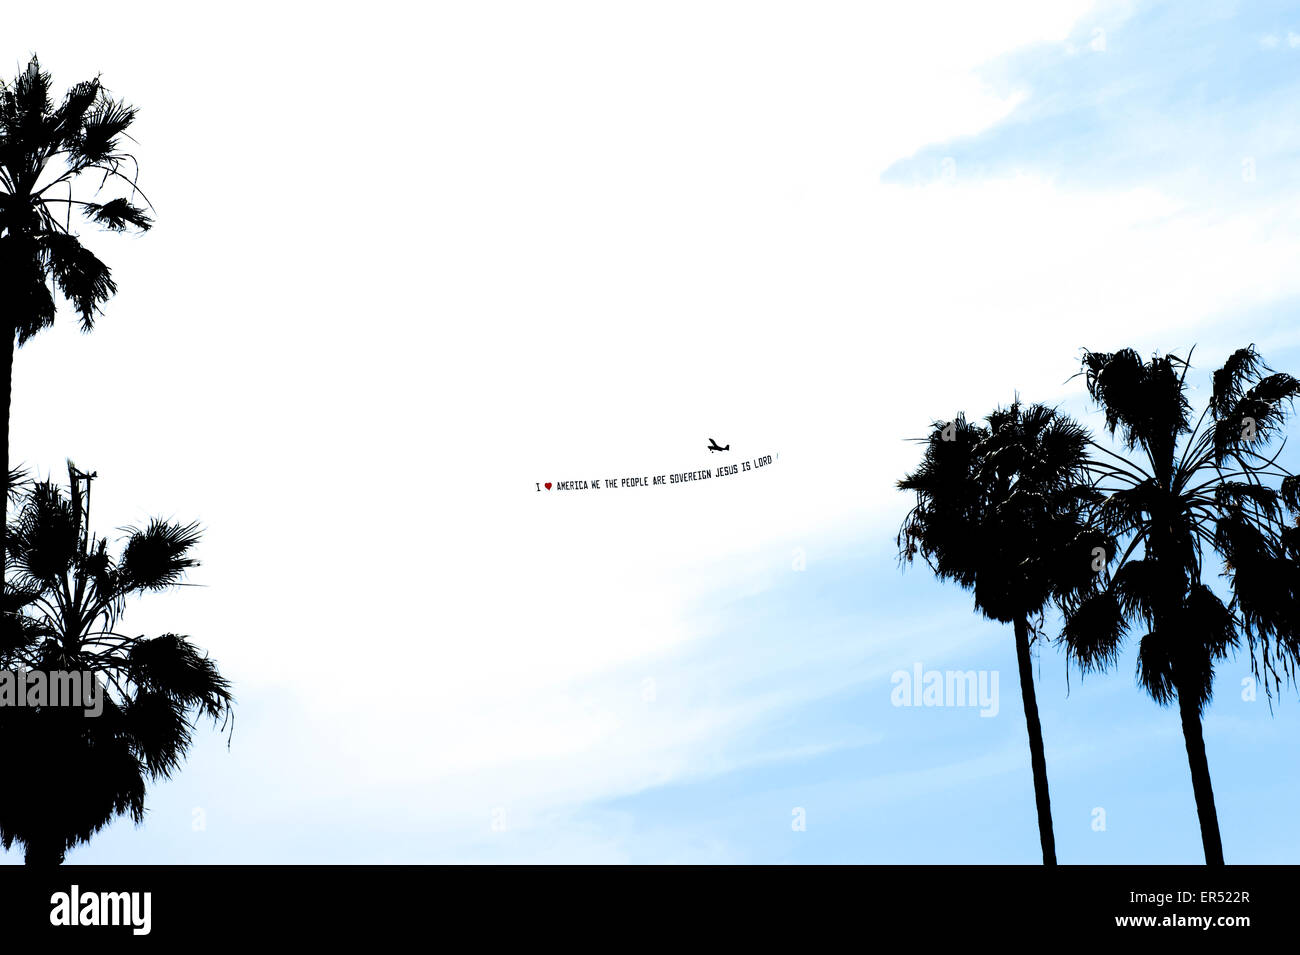 Volo aereo traino banner pubblicitari e le palme in primo piano. La spiaggia di Venice, California, Stati Uniti d'America. Foto Stock